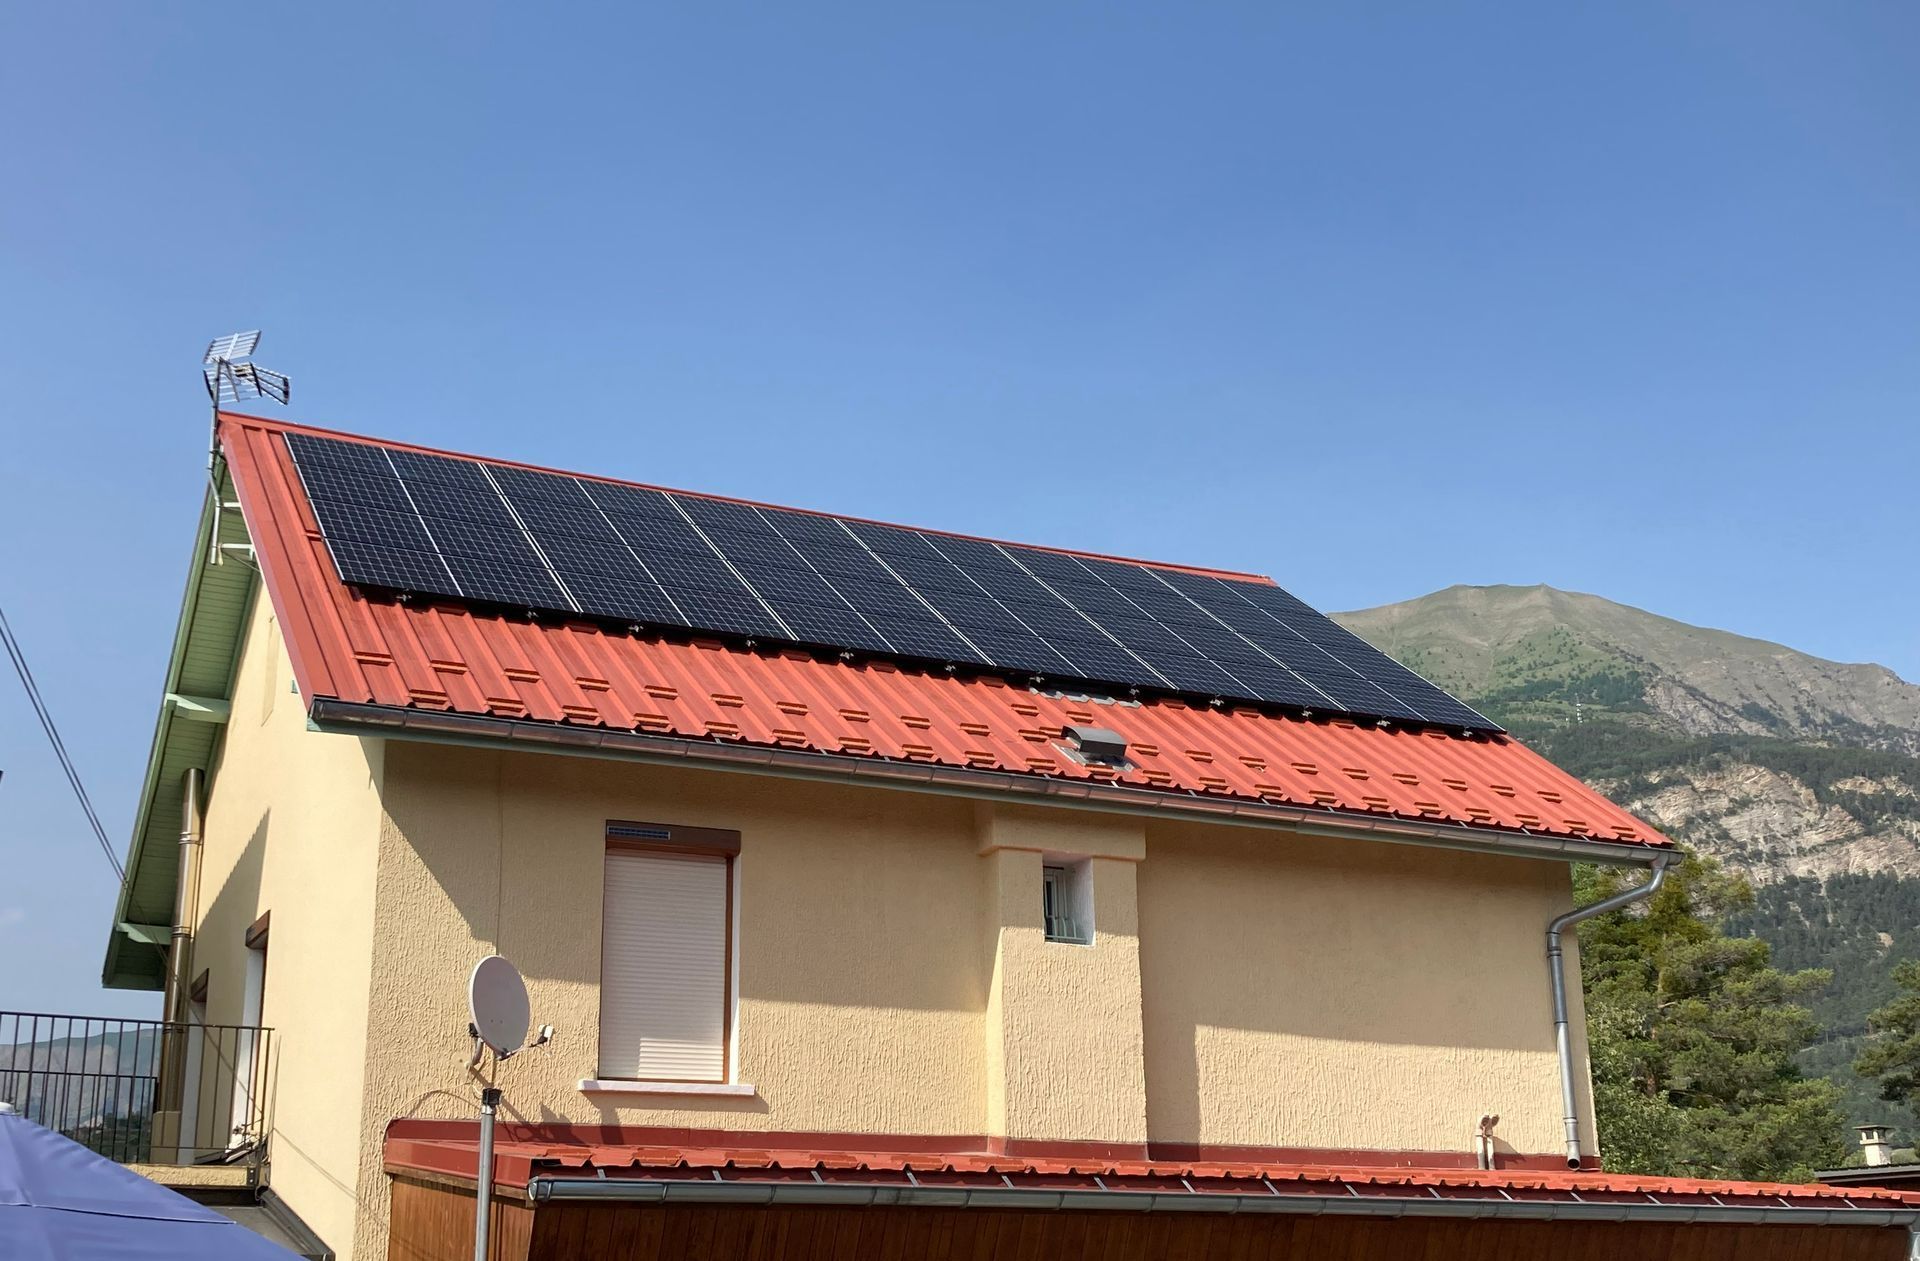 Maison au toit en zinc recouvert de panneaux photovoltaïques